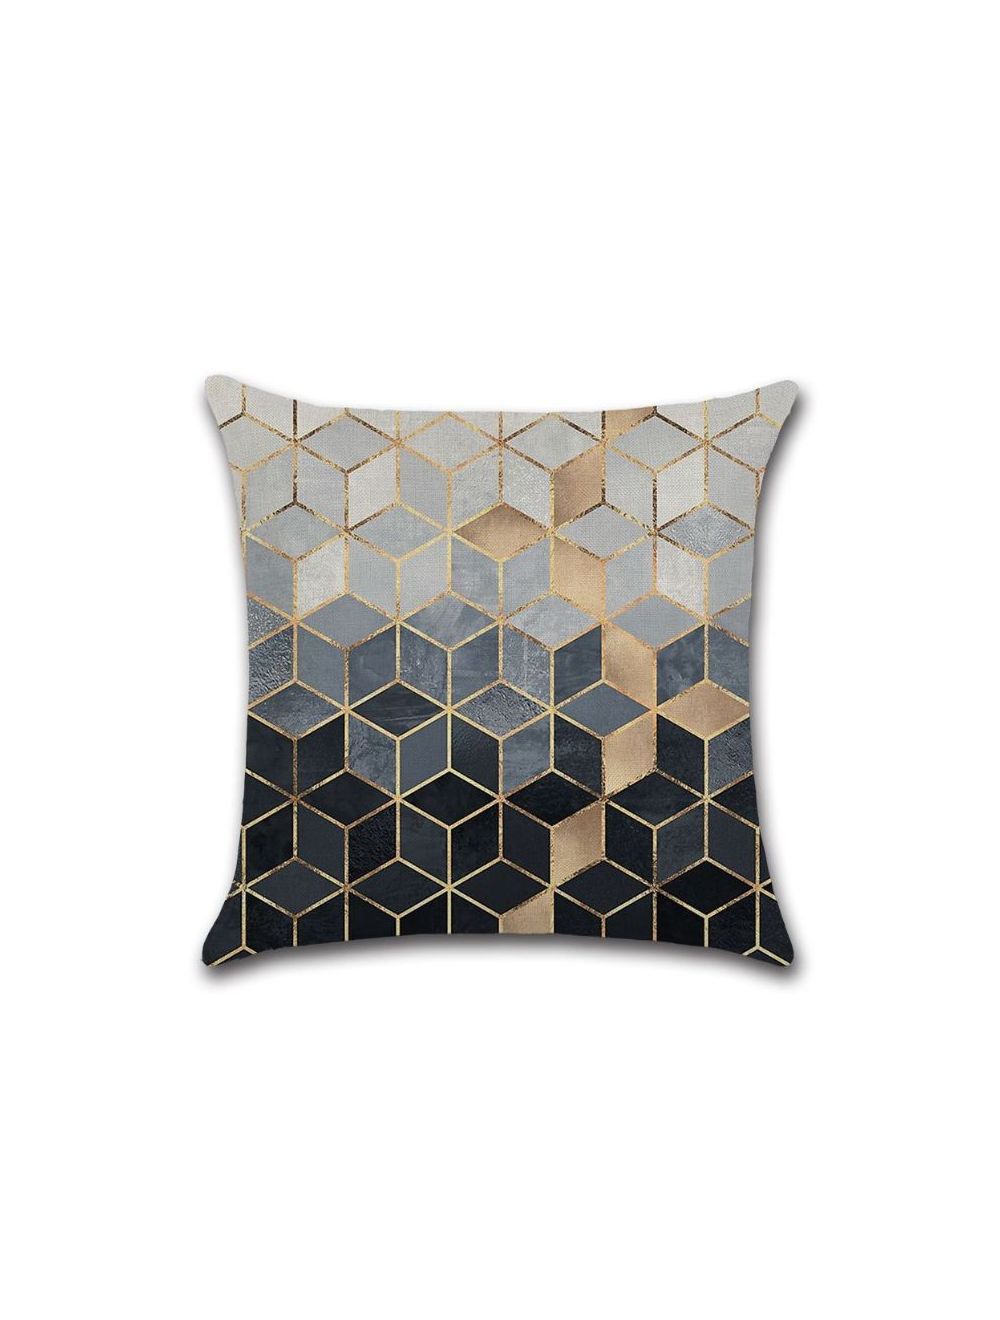 Rishahome Geometry Printed Cushion Cover 45x45 cm-9C33G0015